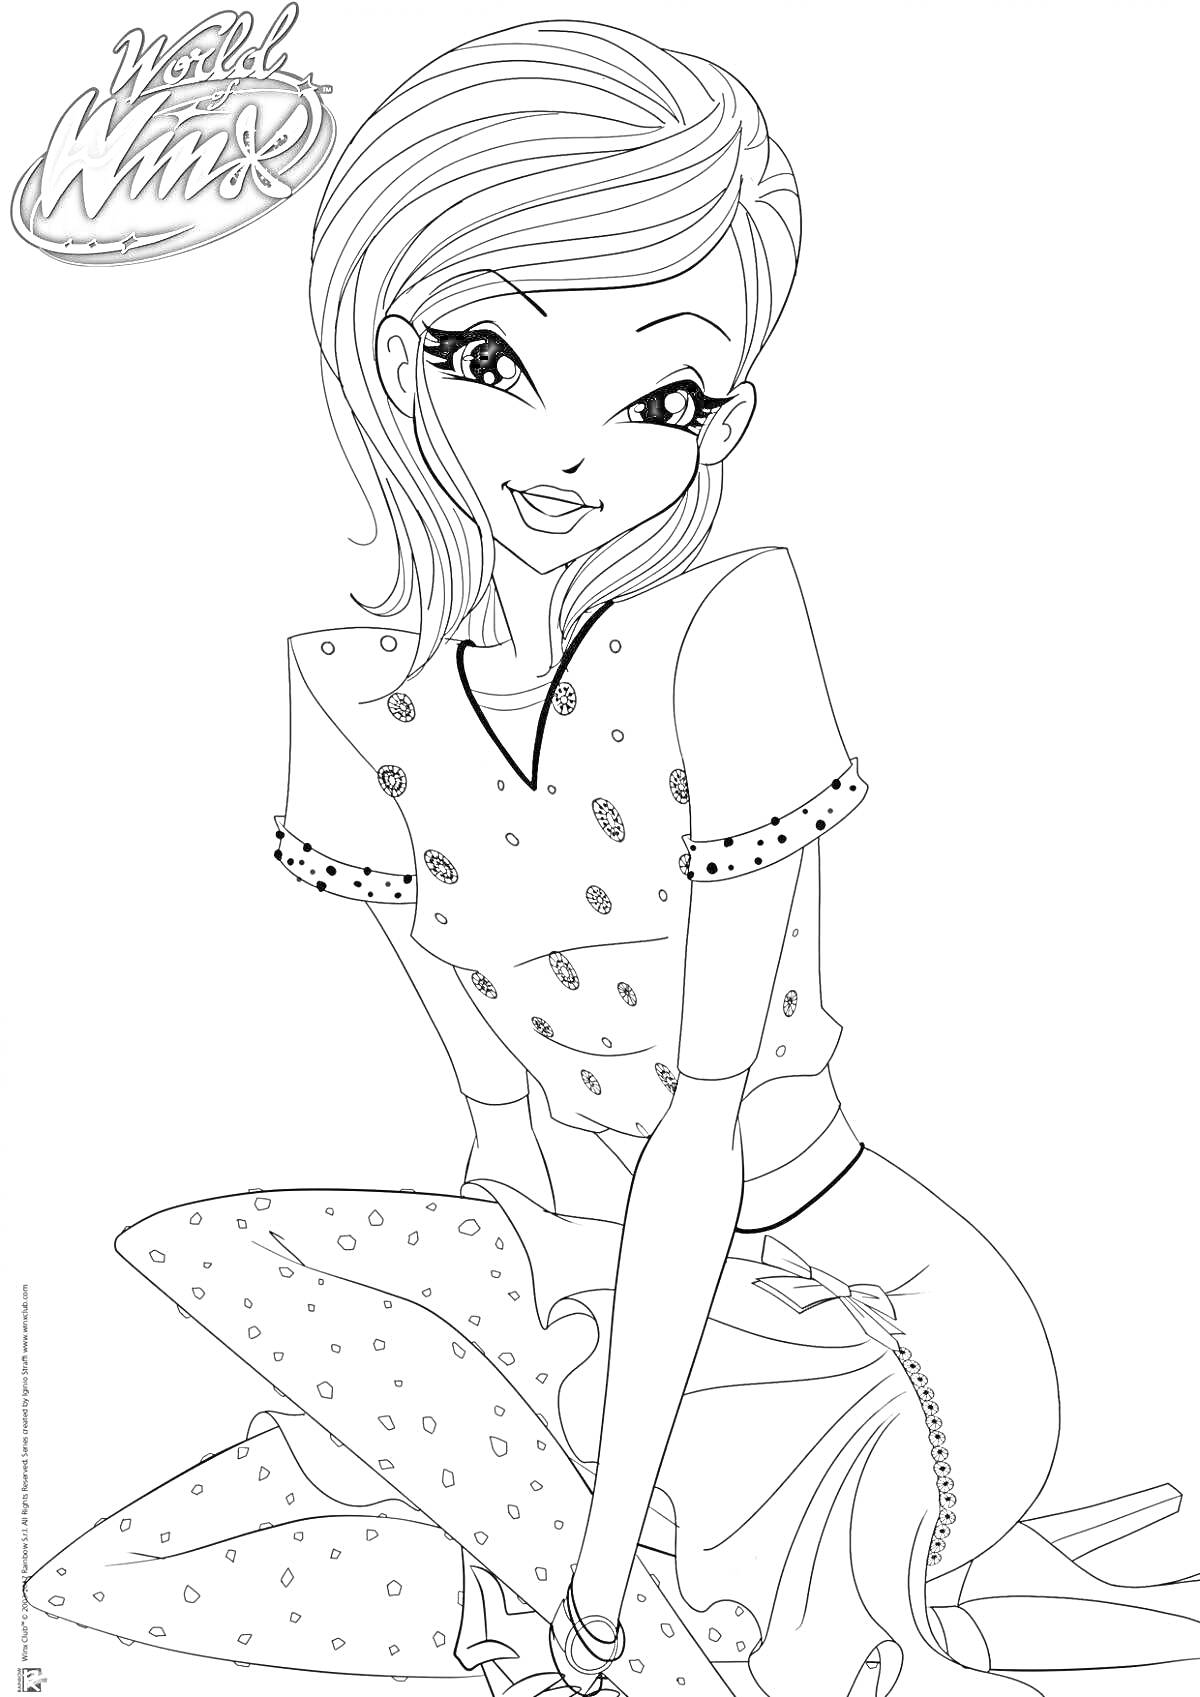 Раскраска Девушка-фея из Winx в футболке и юбке с узором, сидящая на коленях